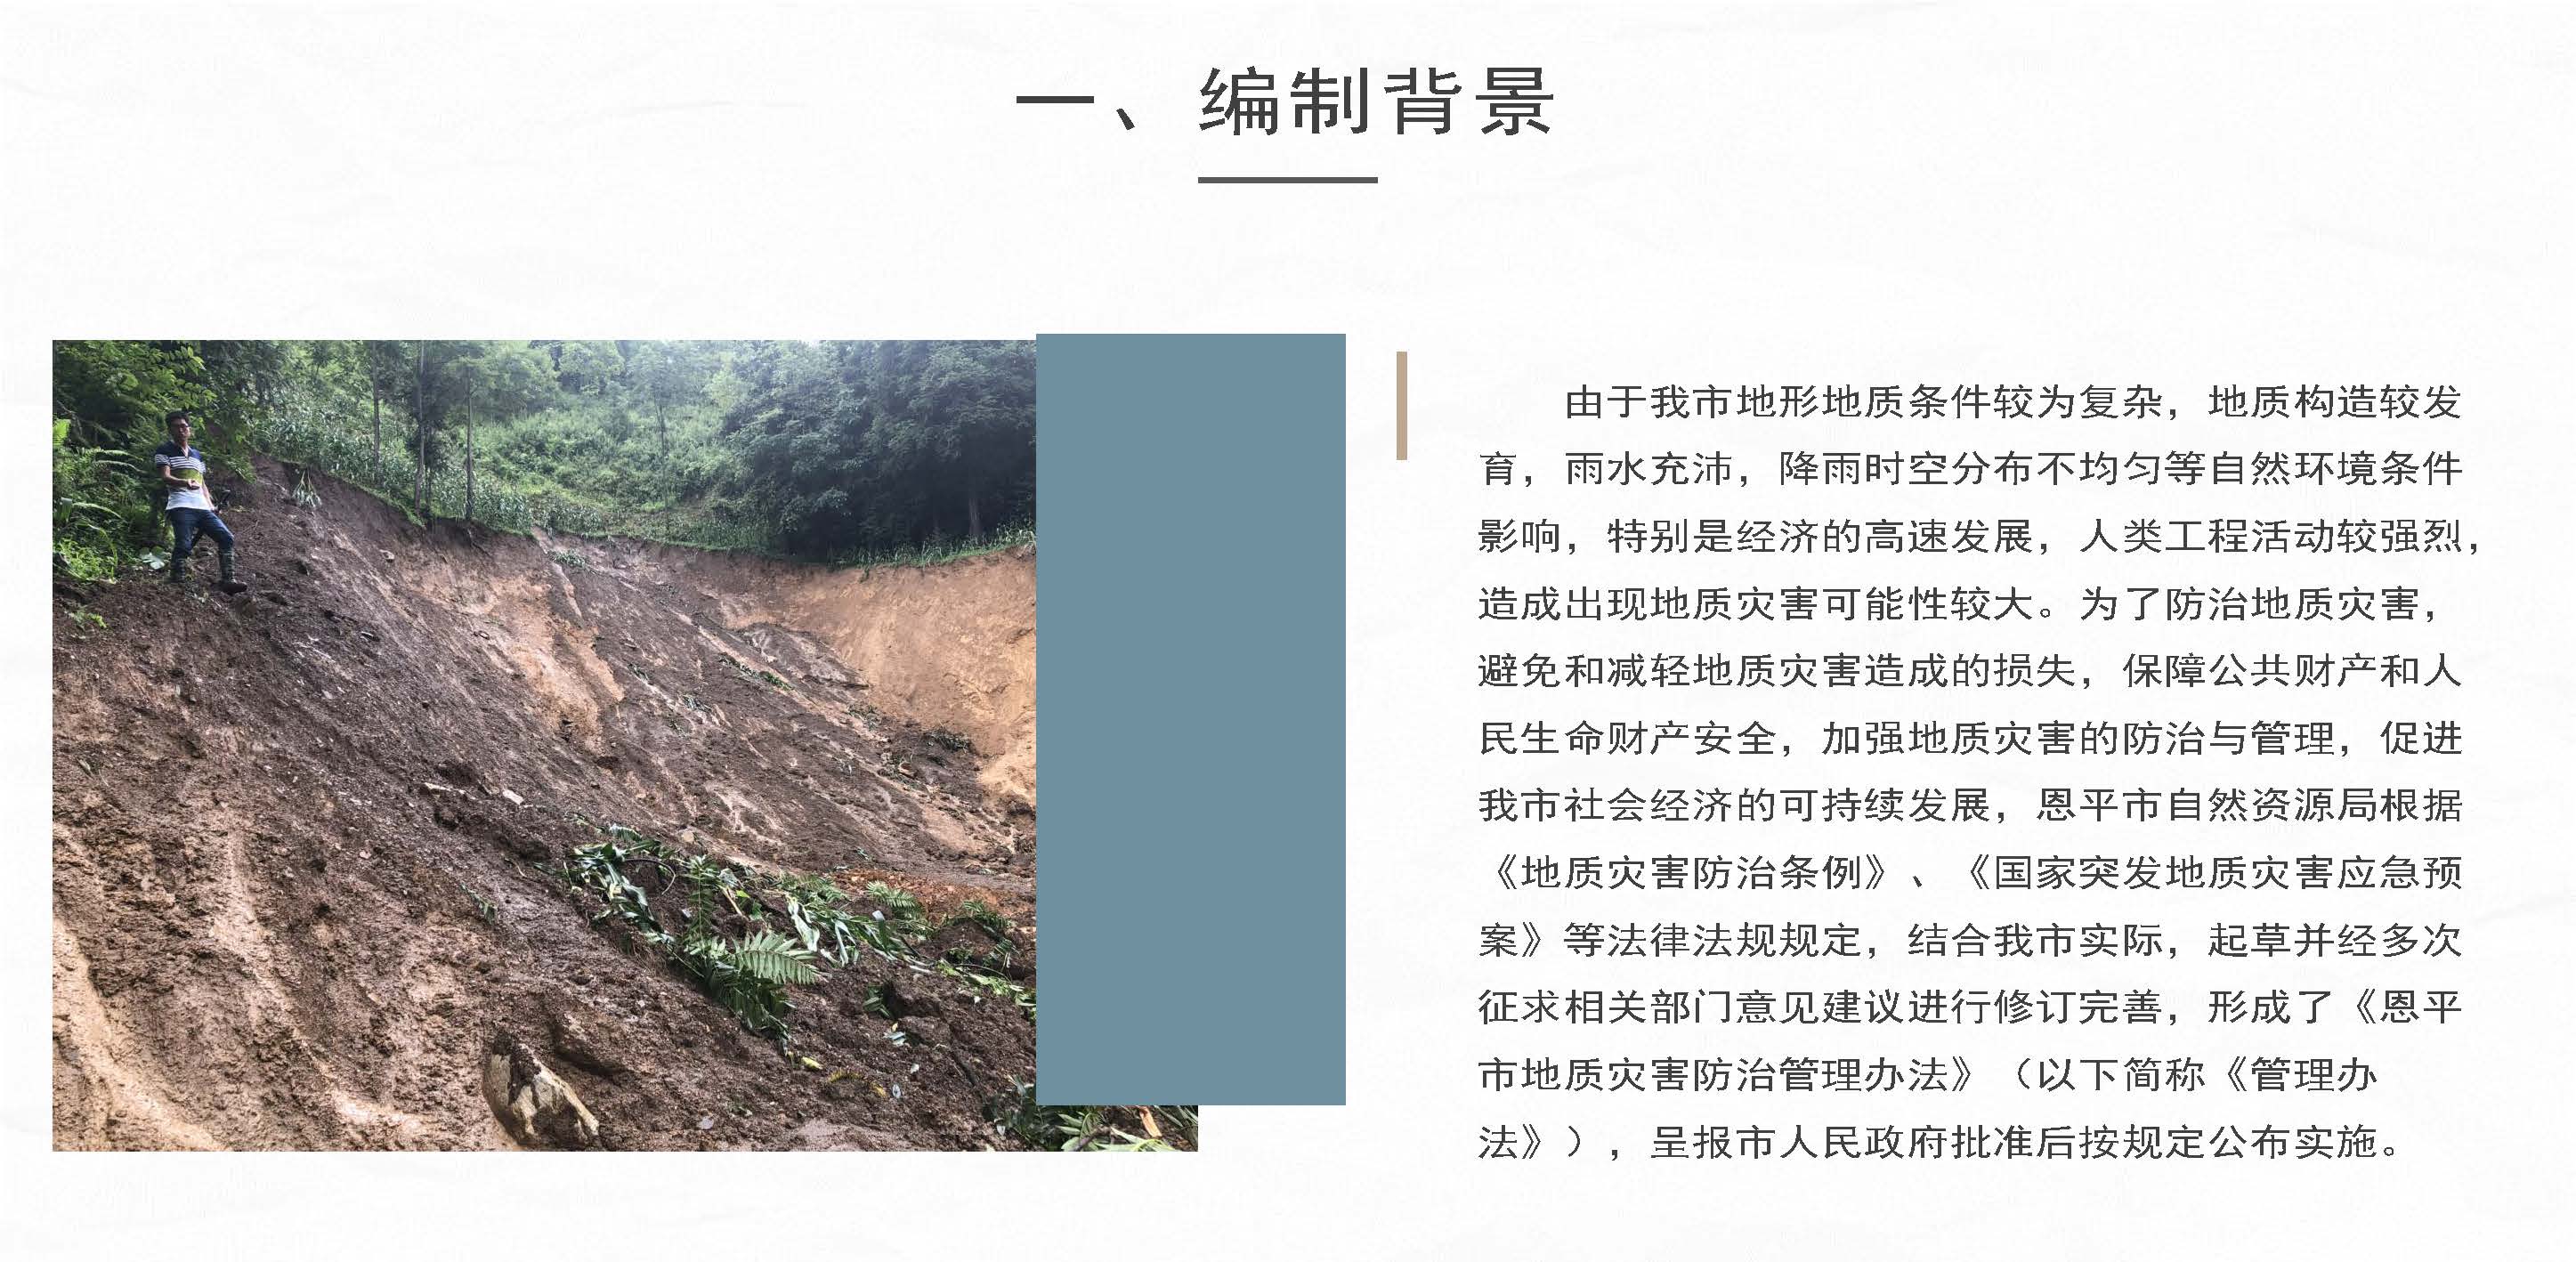 图片解读：恩平市地质灾害防治管理办法_页面_2.jpg